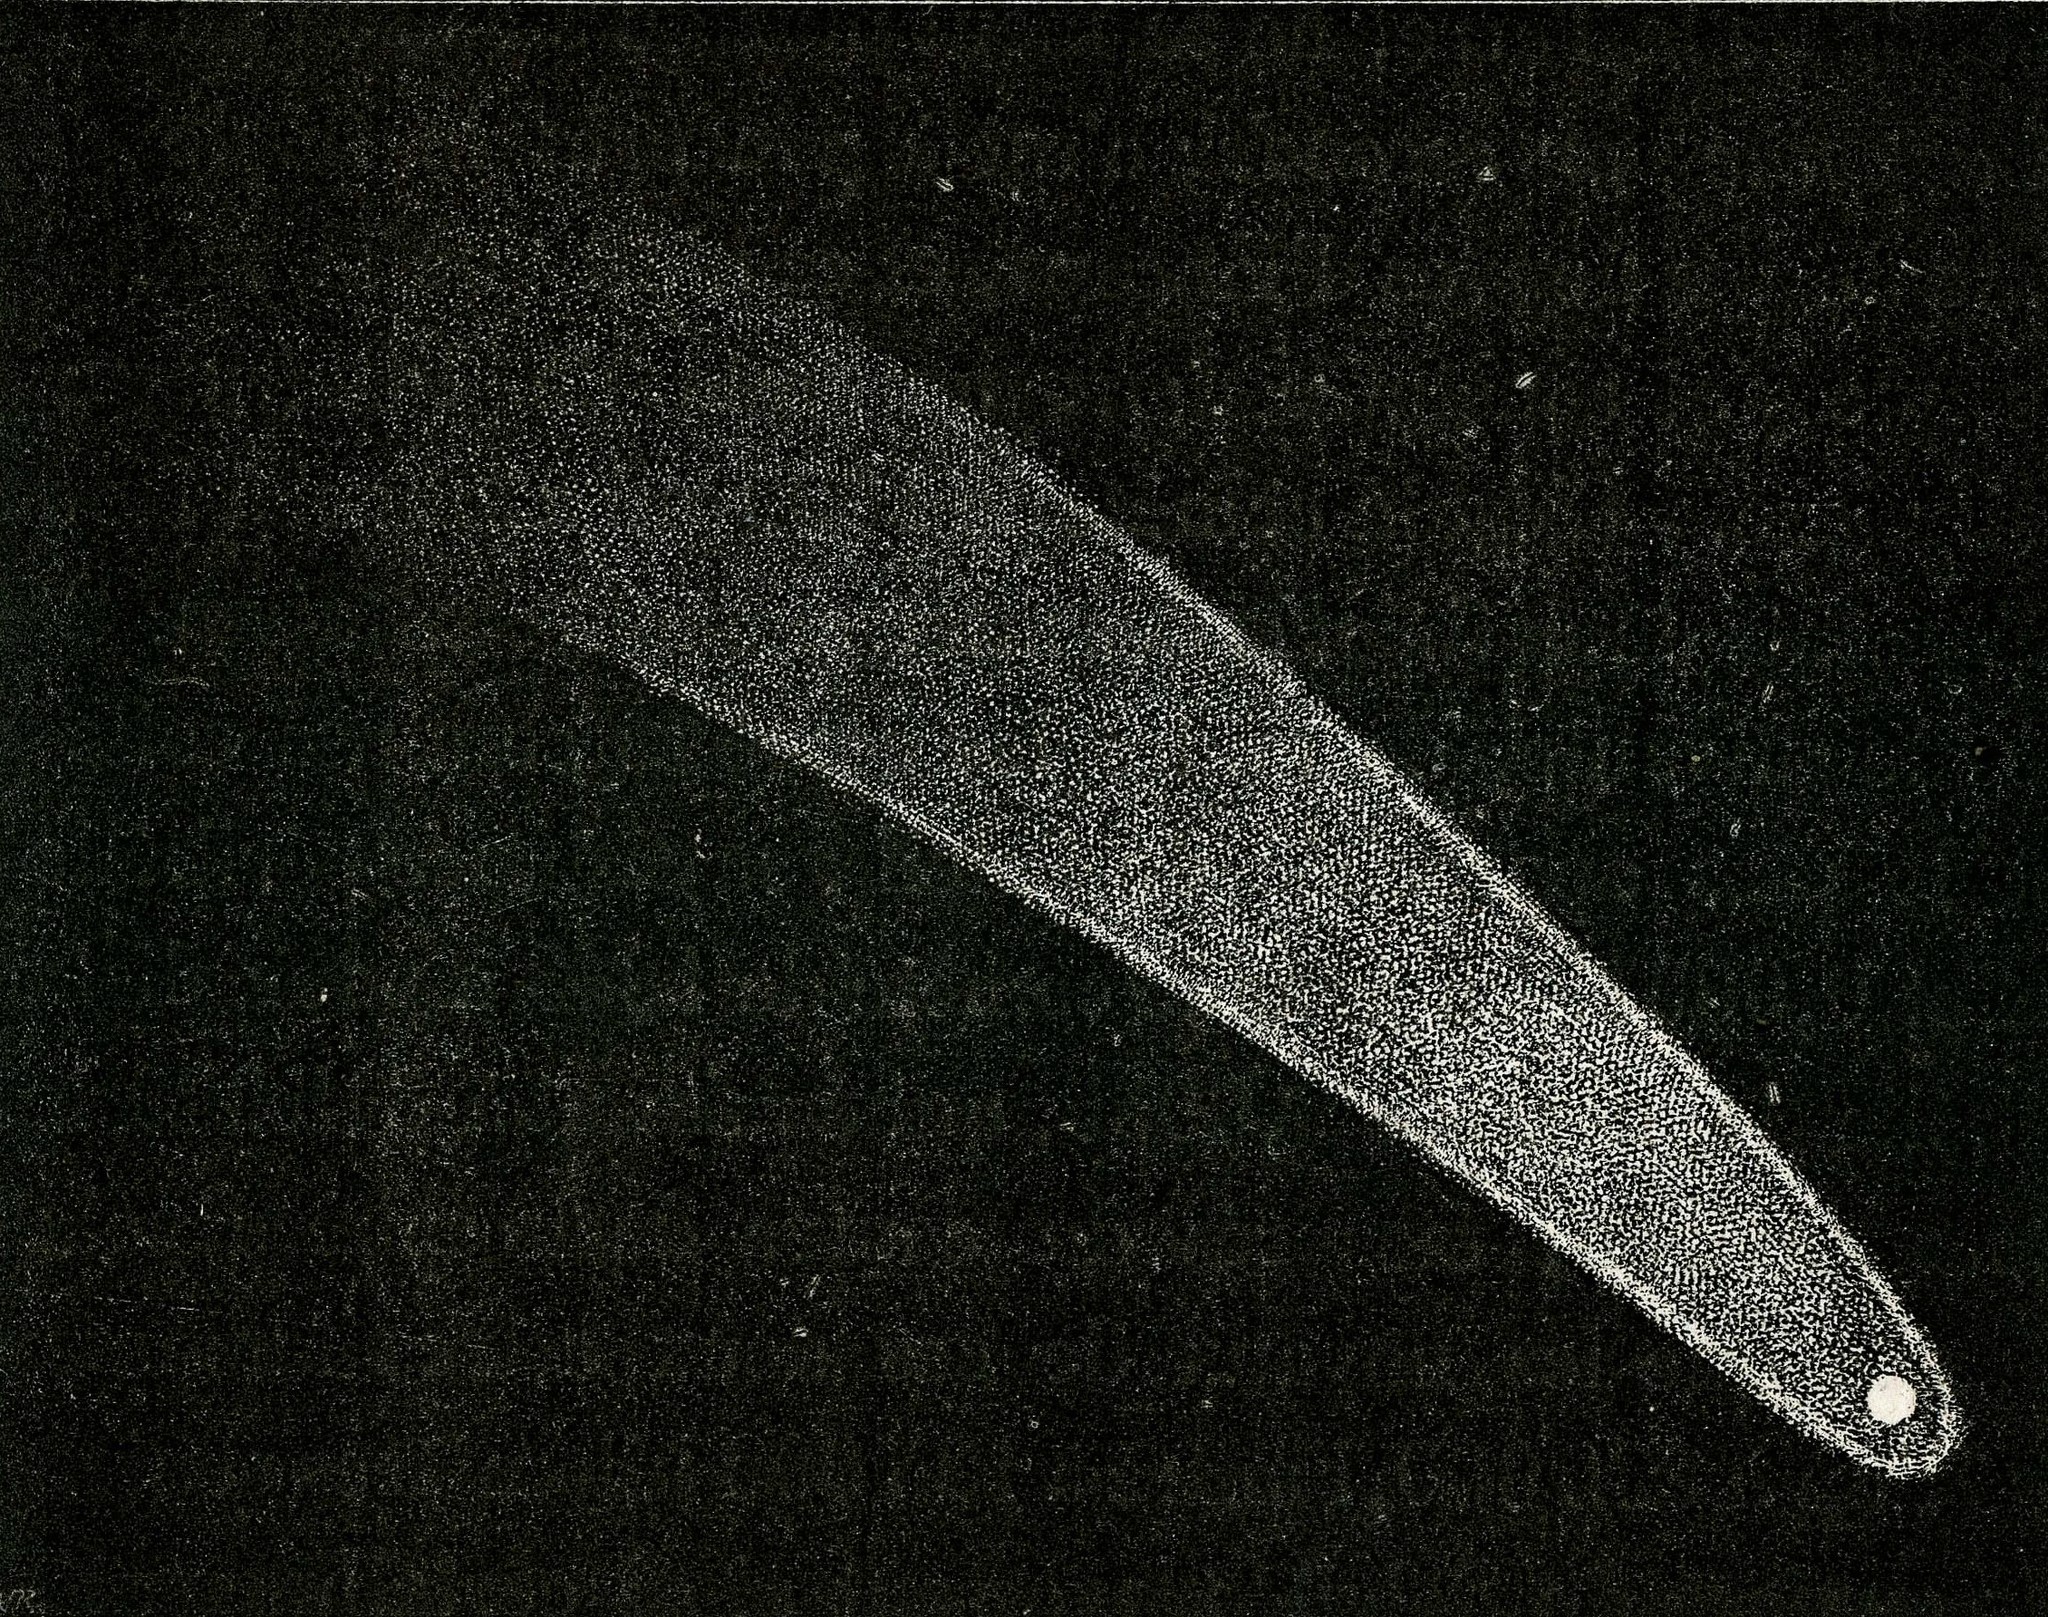  Comète C/1811 F1 Flaugergues - 3